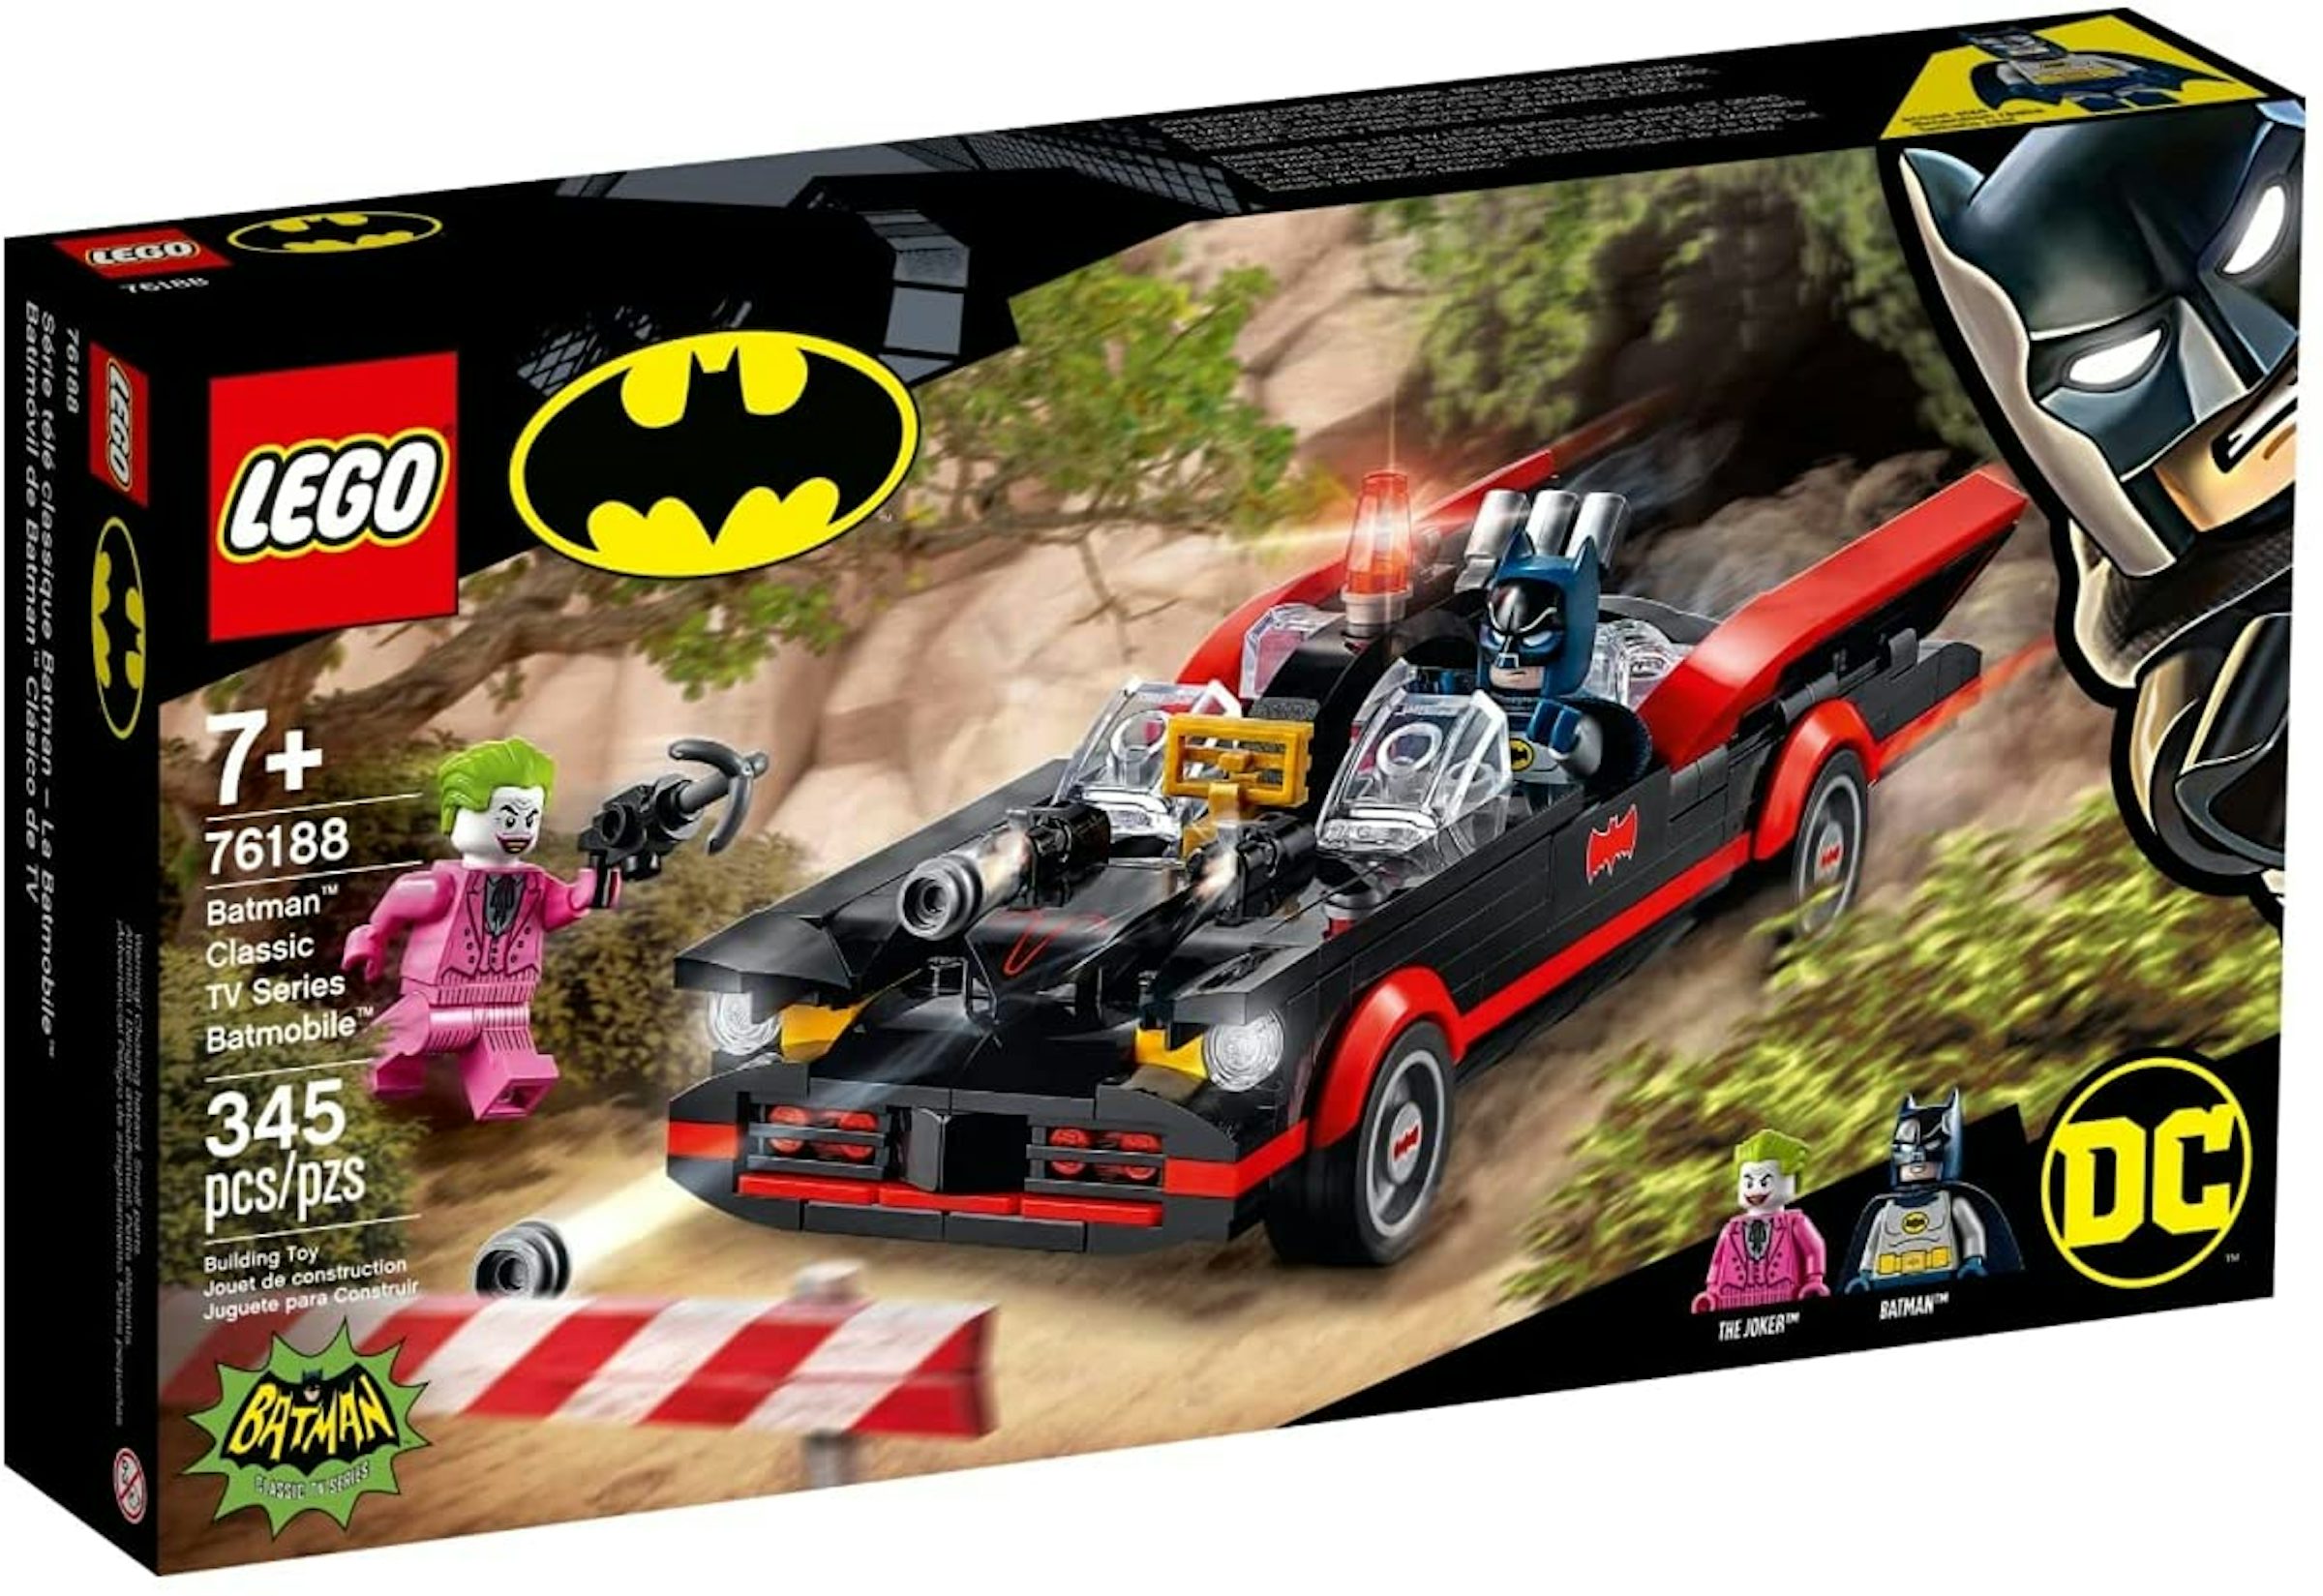 LEGO DC Batman - Batman Classic TV Series Batmobile Set 76188